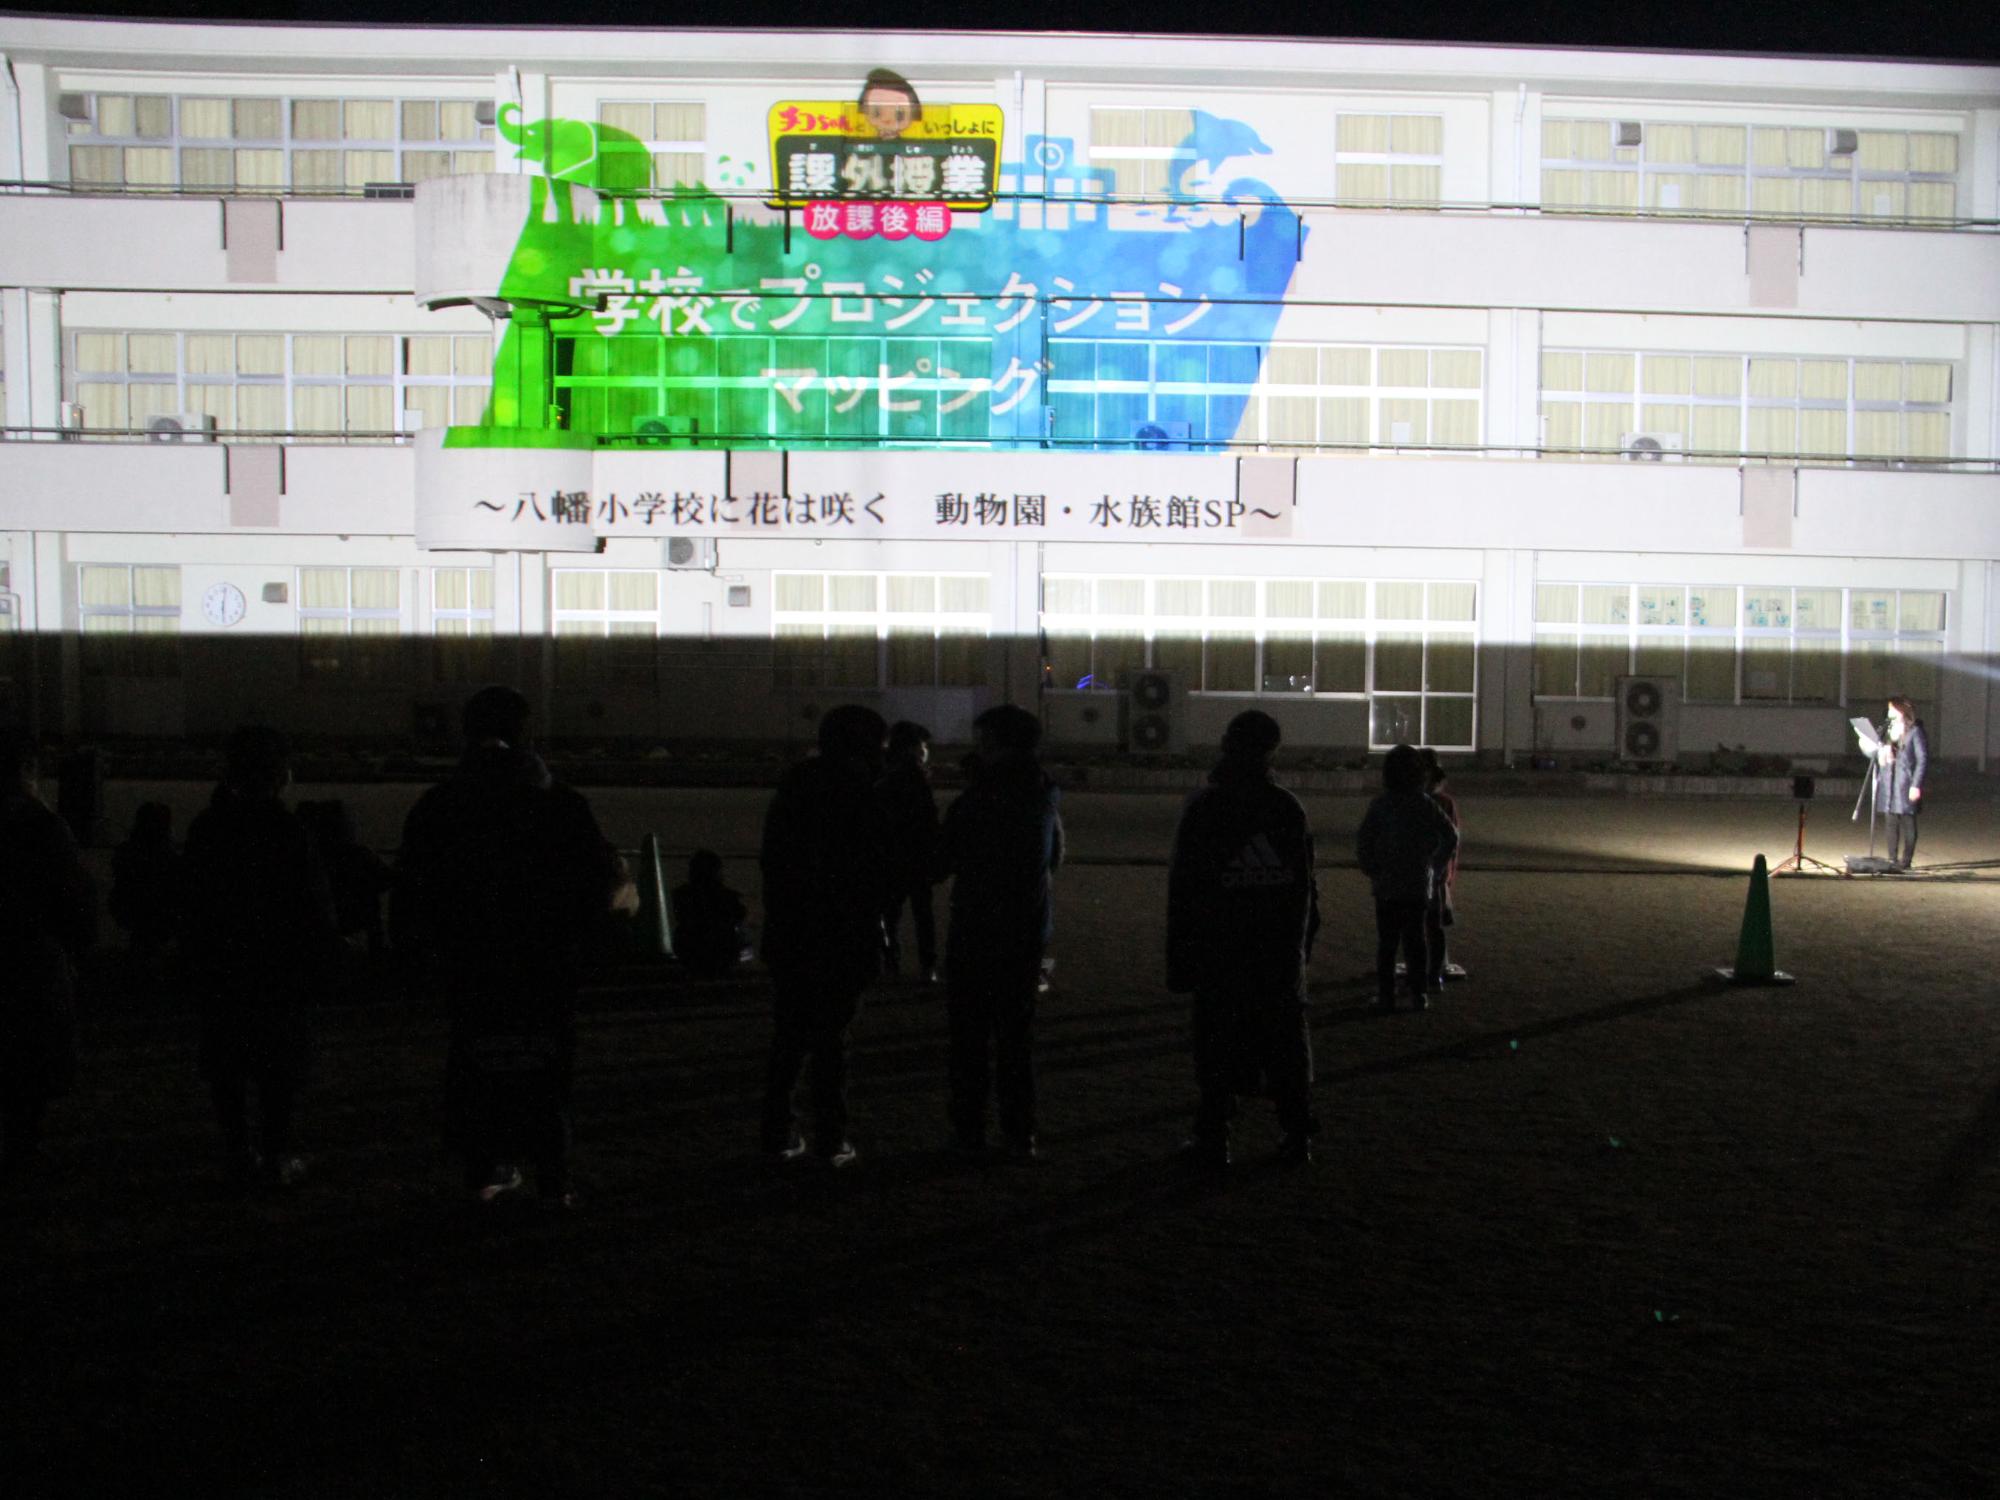 八幡小学校校舎のプロジェクションマッピングを投影している様子